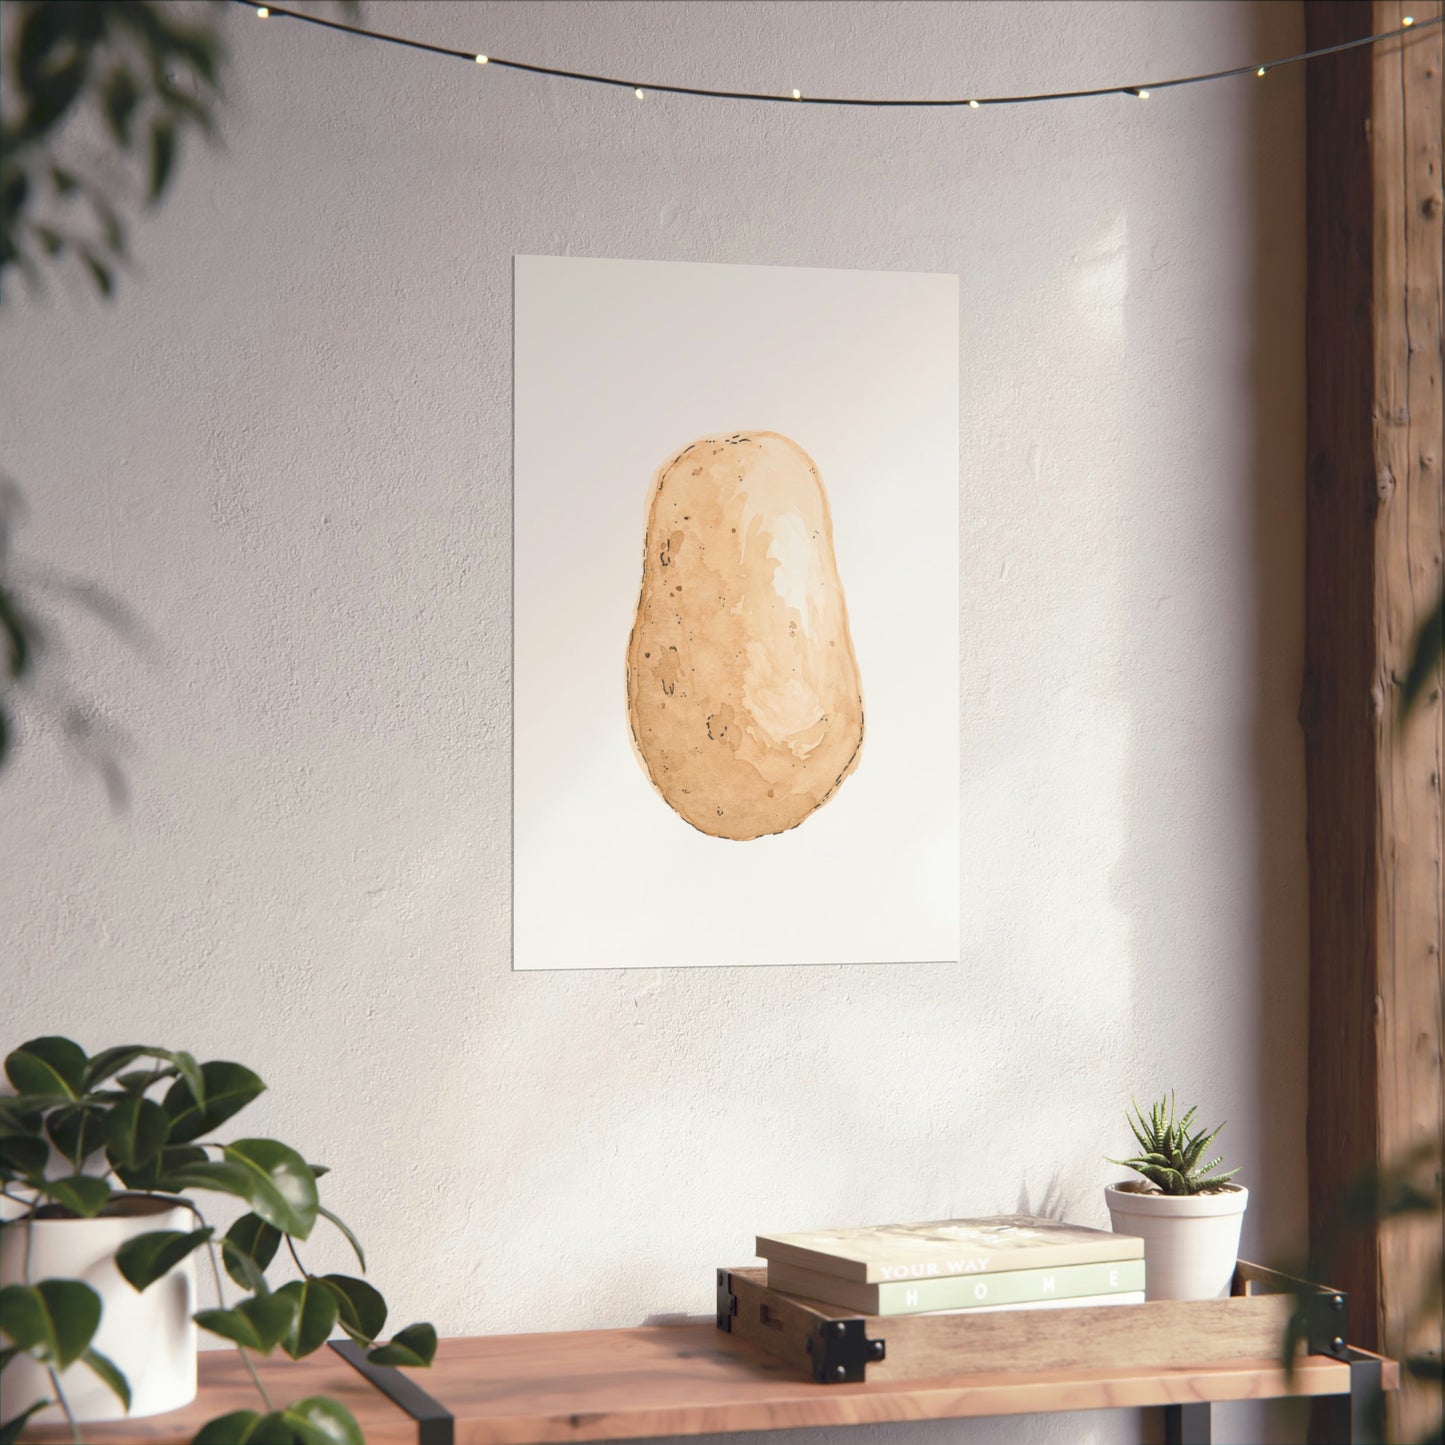 Potato Print